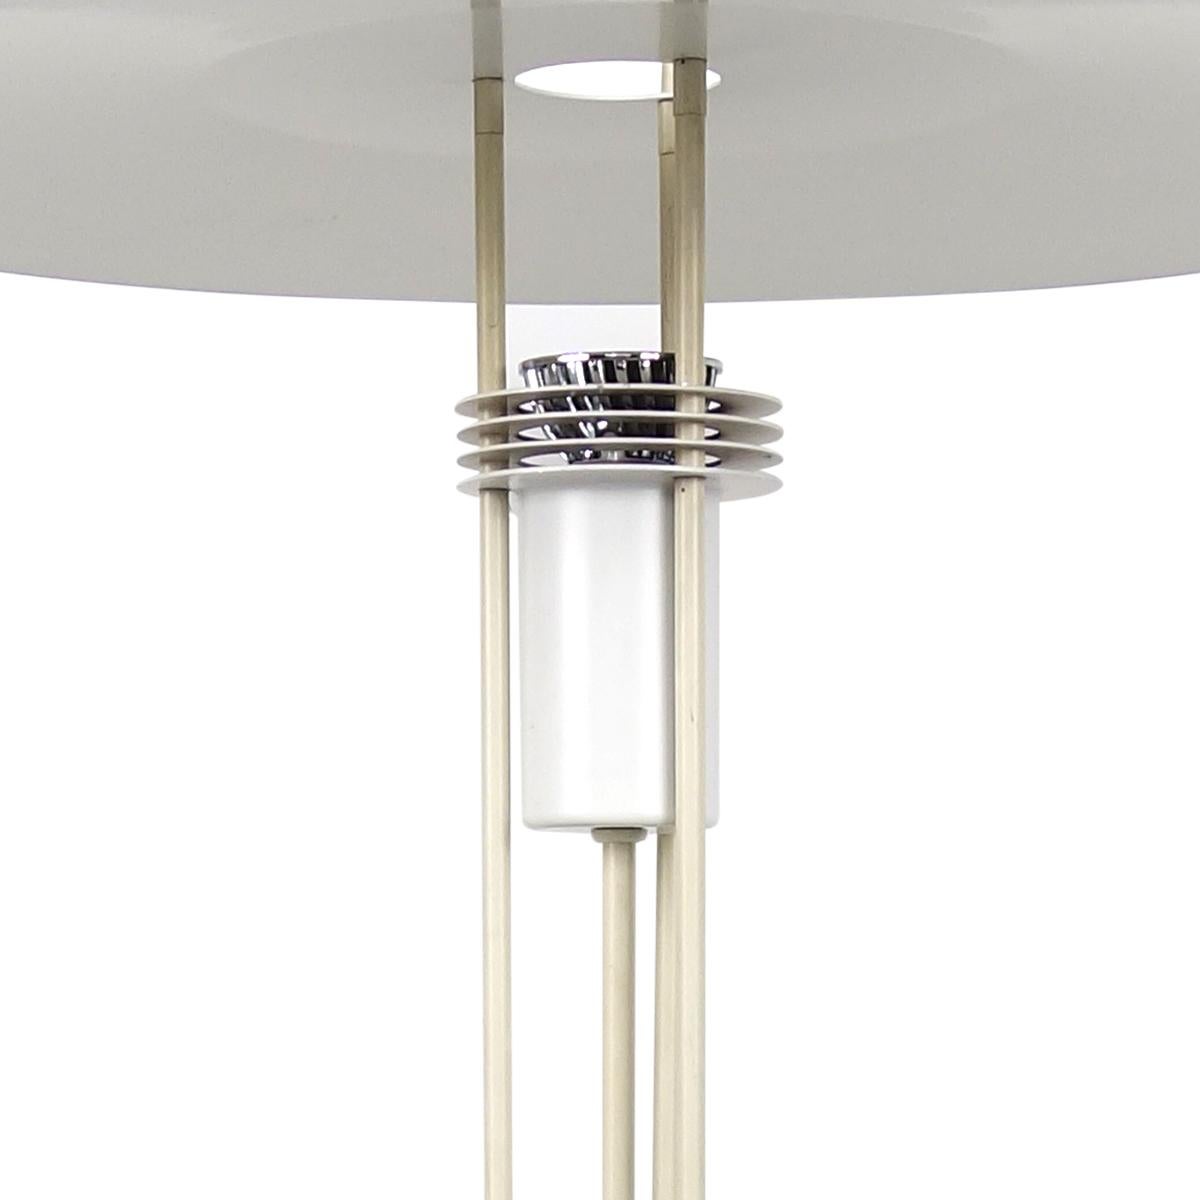 Elegante Stehleuchte, entworfen und hergestellt vom dänischen Lampenspezialisten Frandsen.
Sie besteht aus einem runden Sockel, auf dem drei Rohre montiert sind, die einen zweistufigen Schirm tragen.
Die Art und Weise, wie das Licht ausfällt, ist